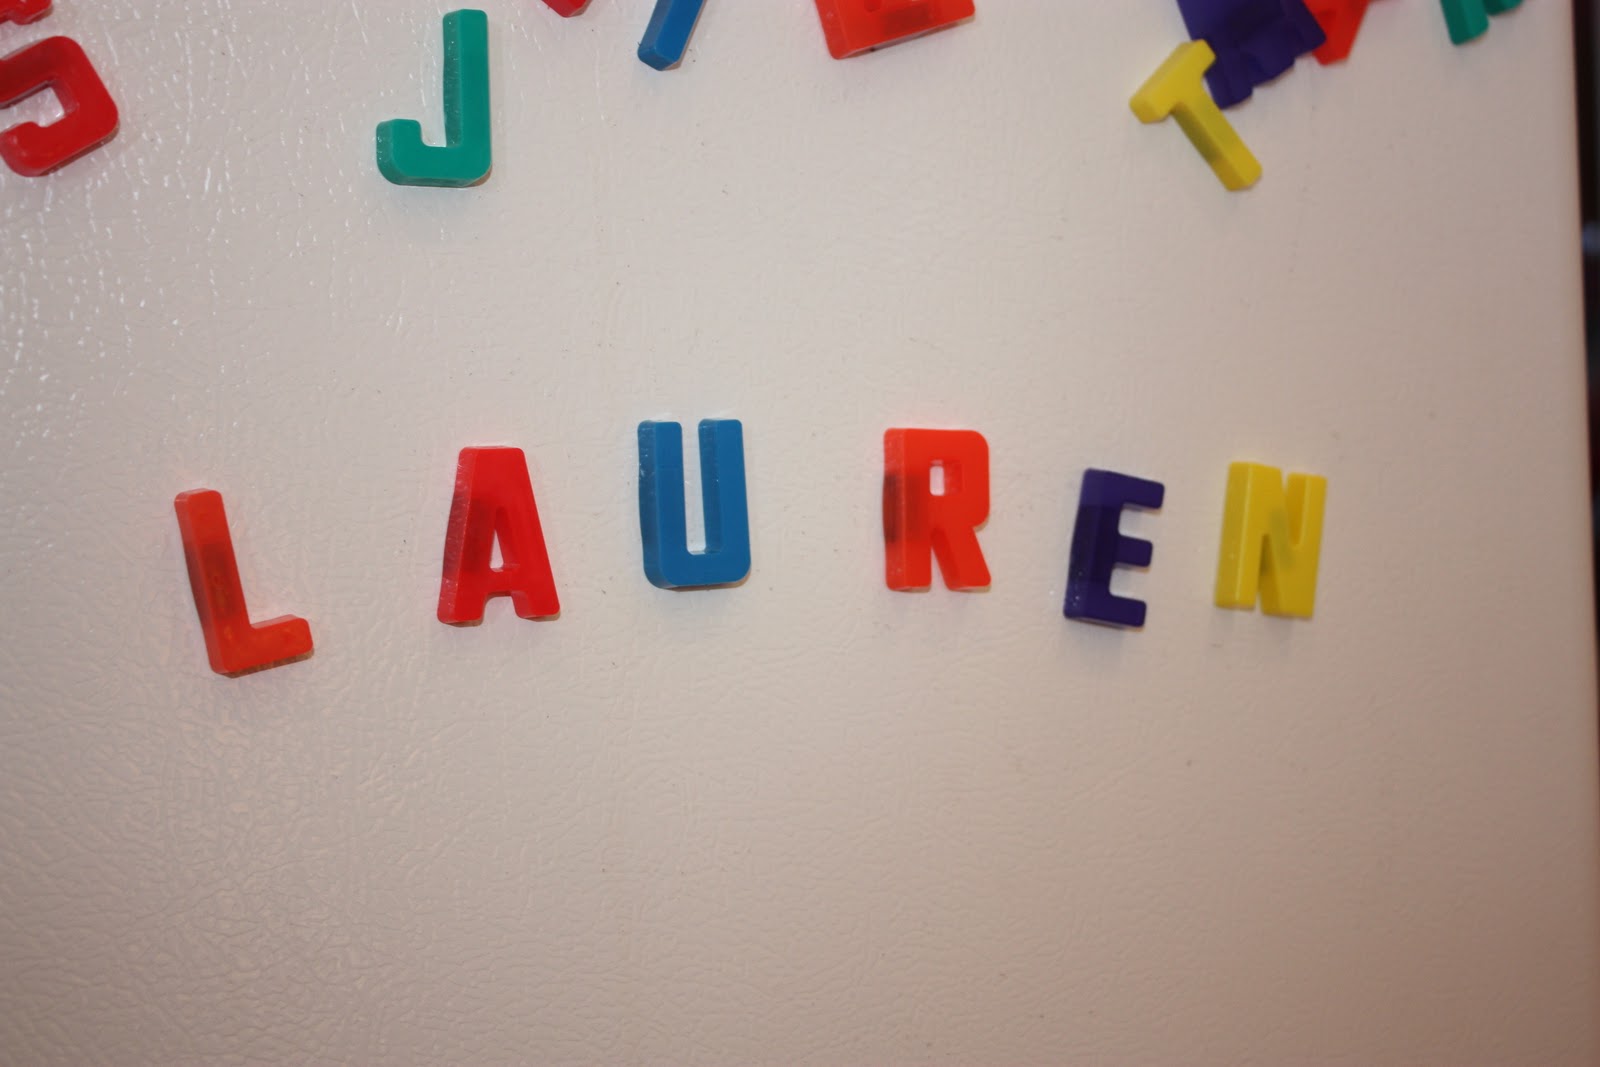 Lauren Letters